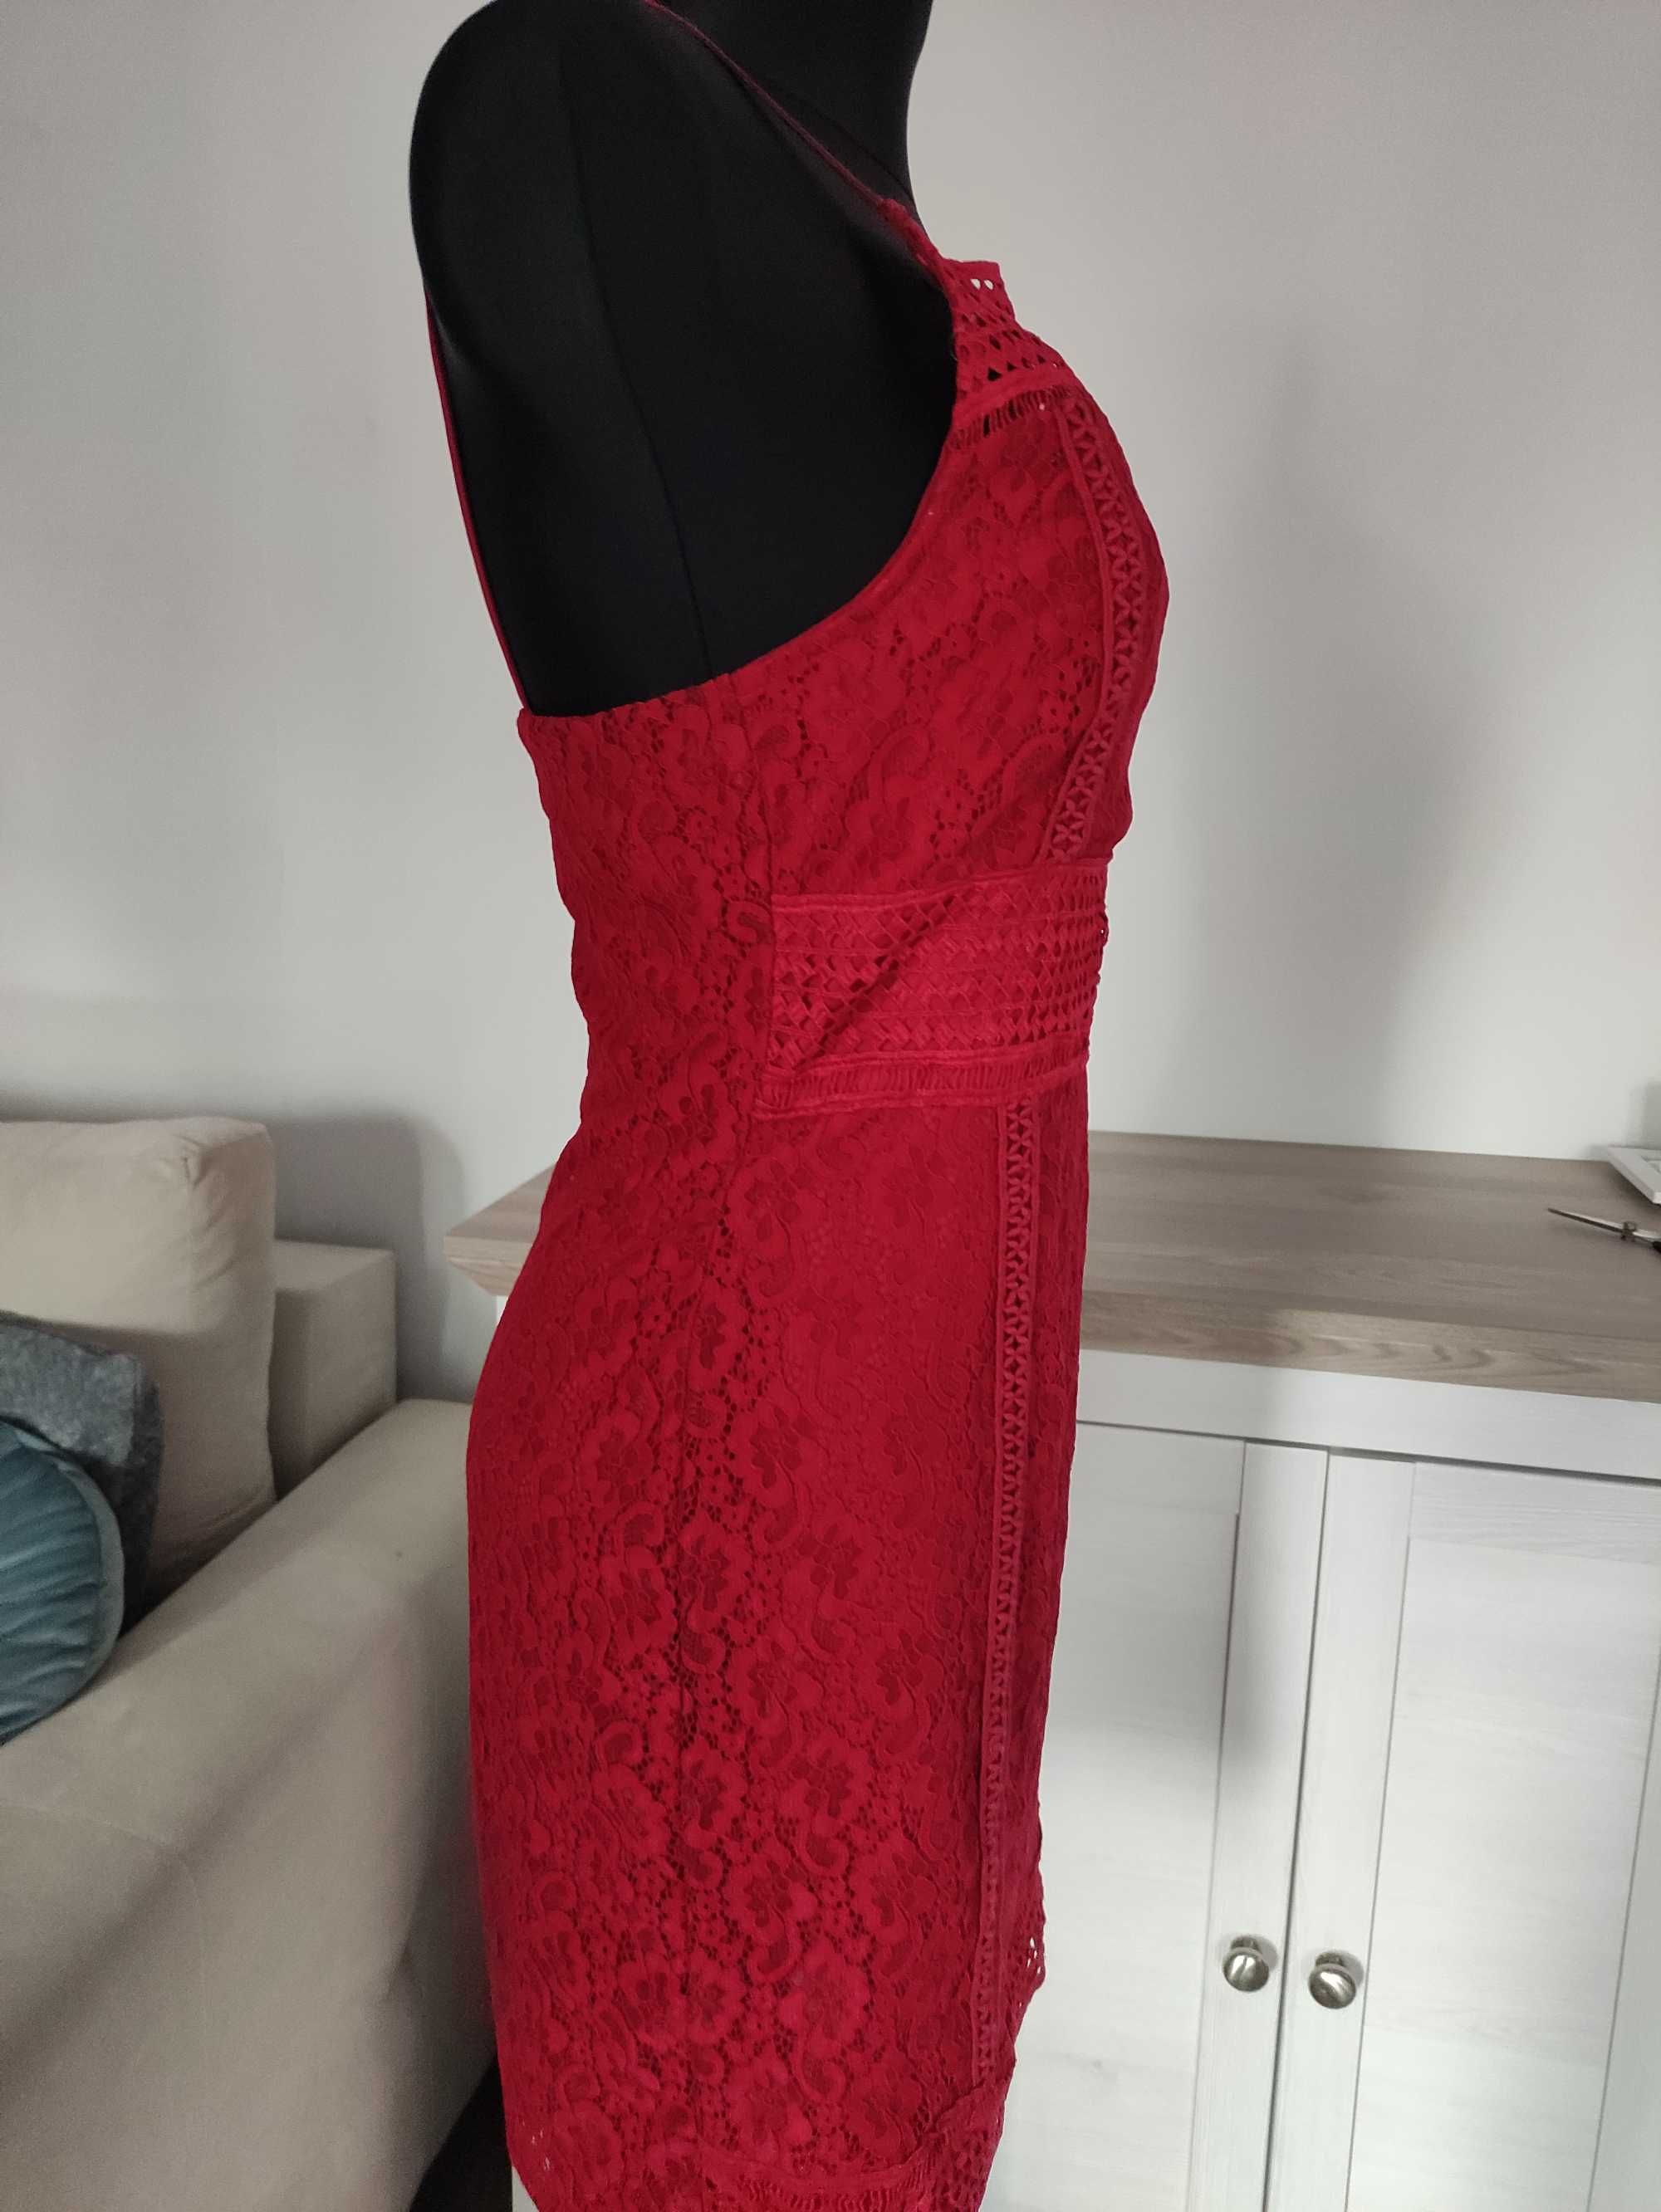 sukienka bordowa czerwona koronkowa Missguided  prosta koktajlowa M 36